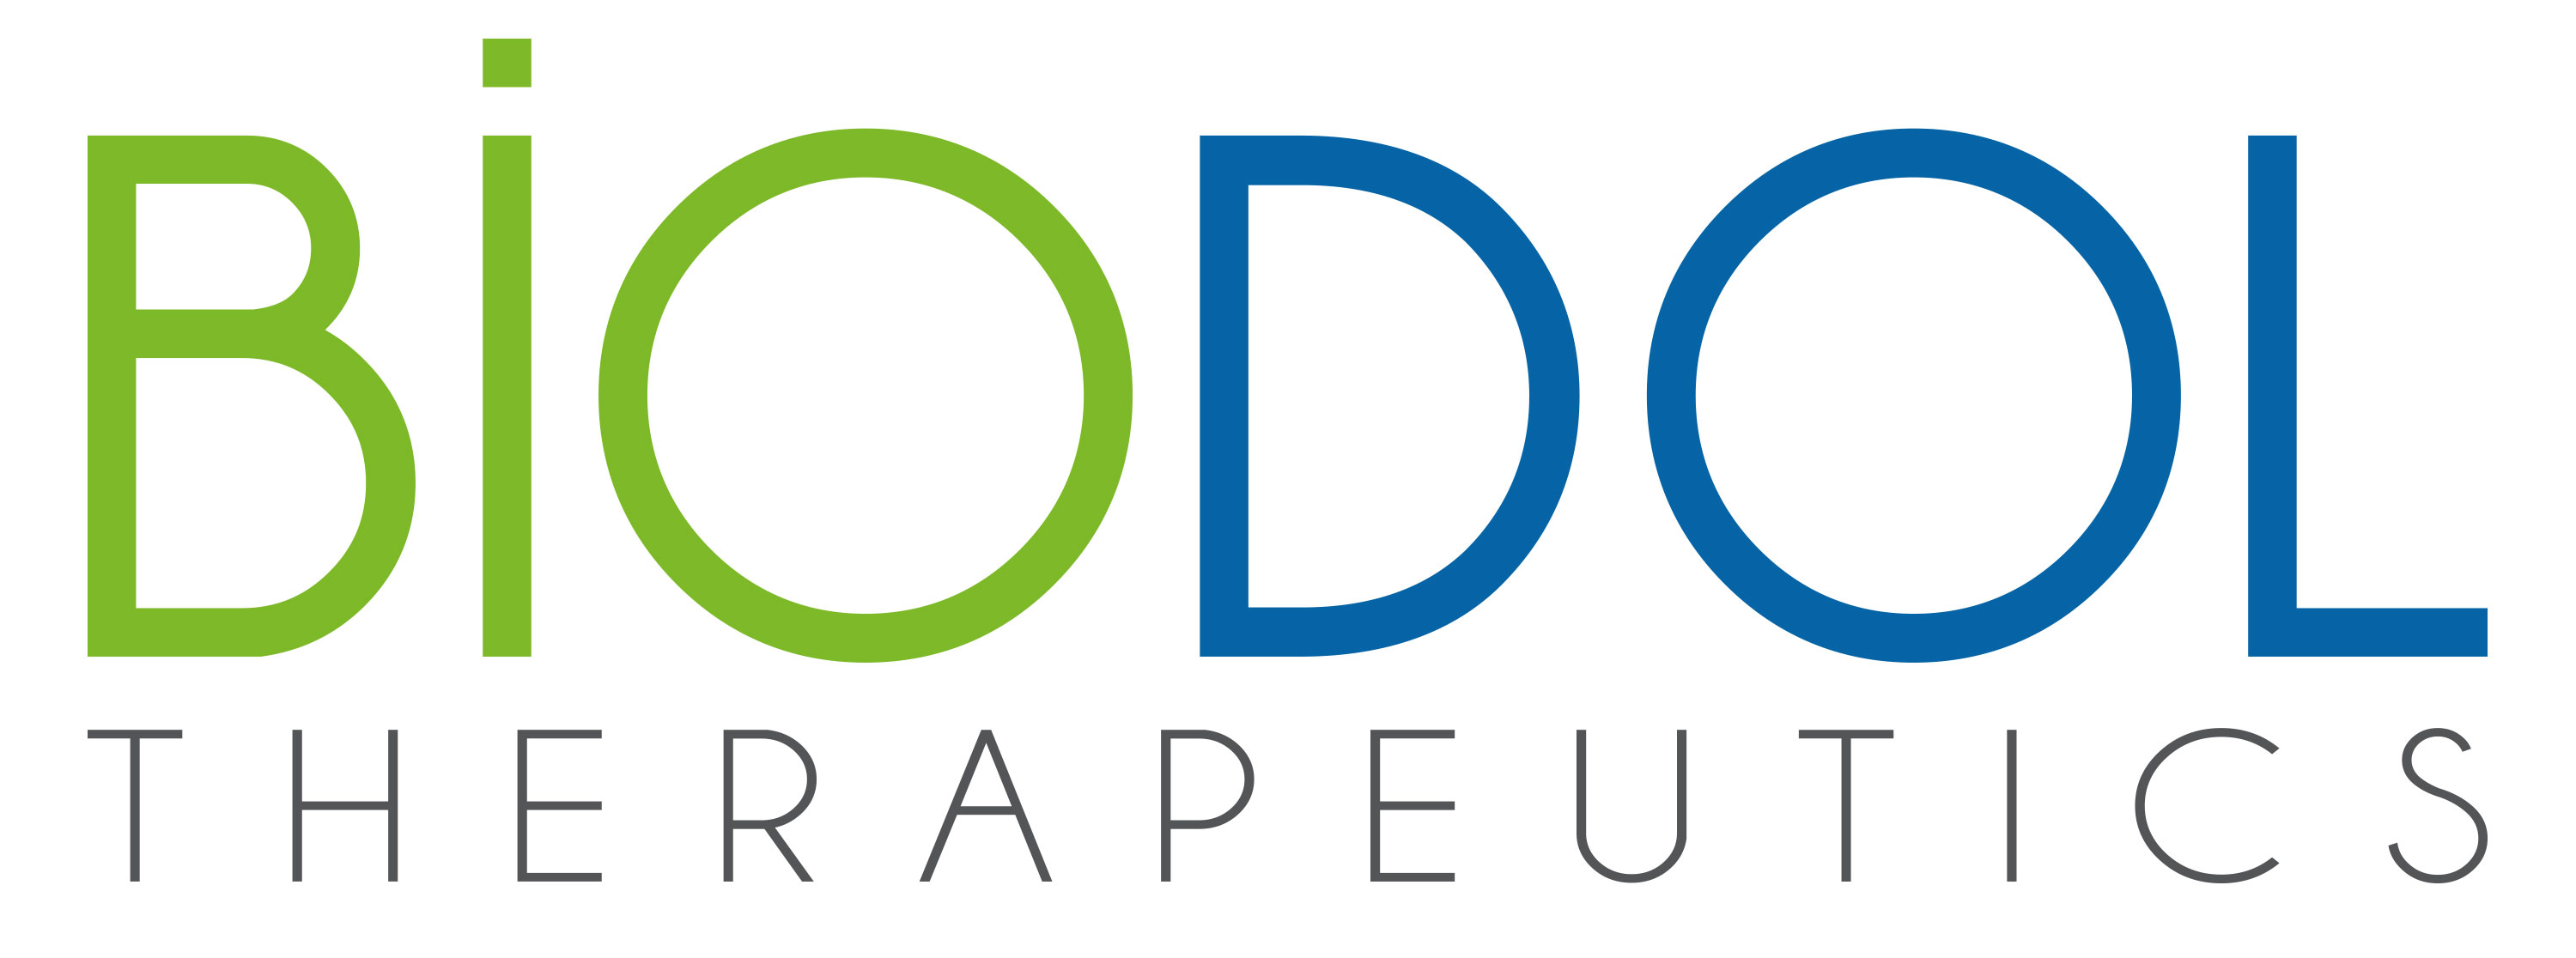 Logo Company